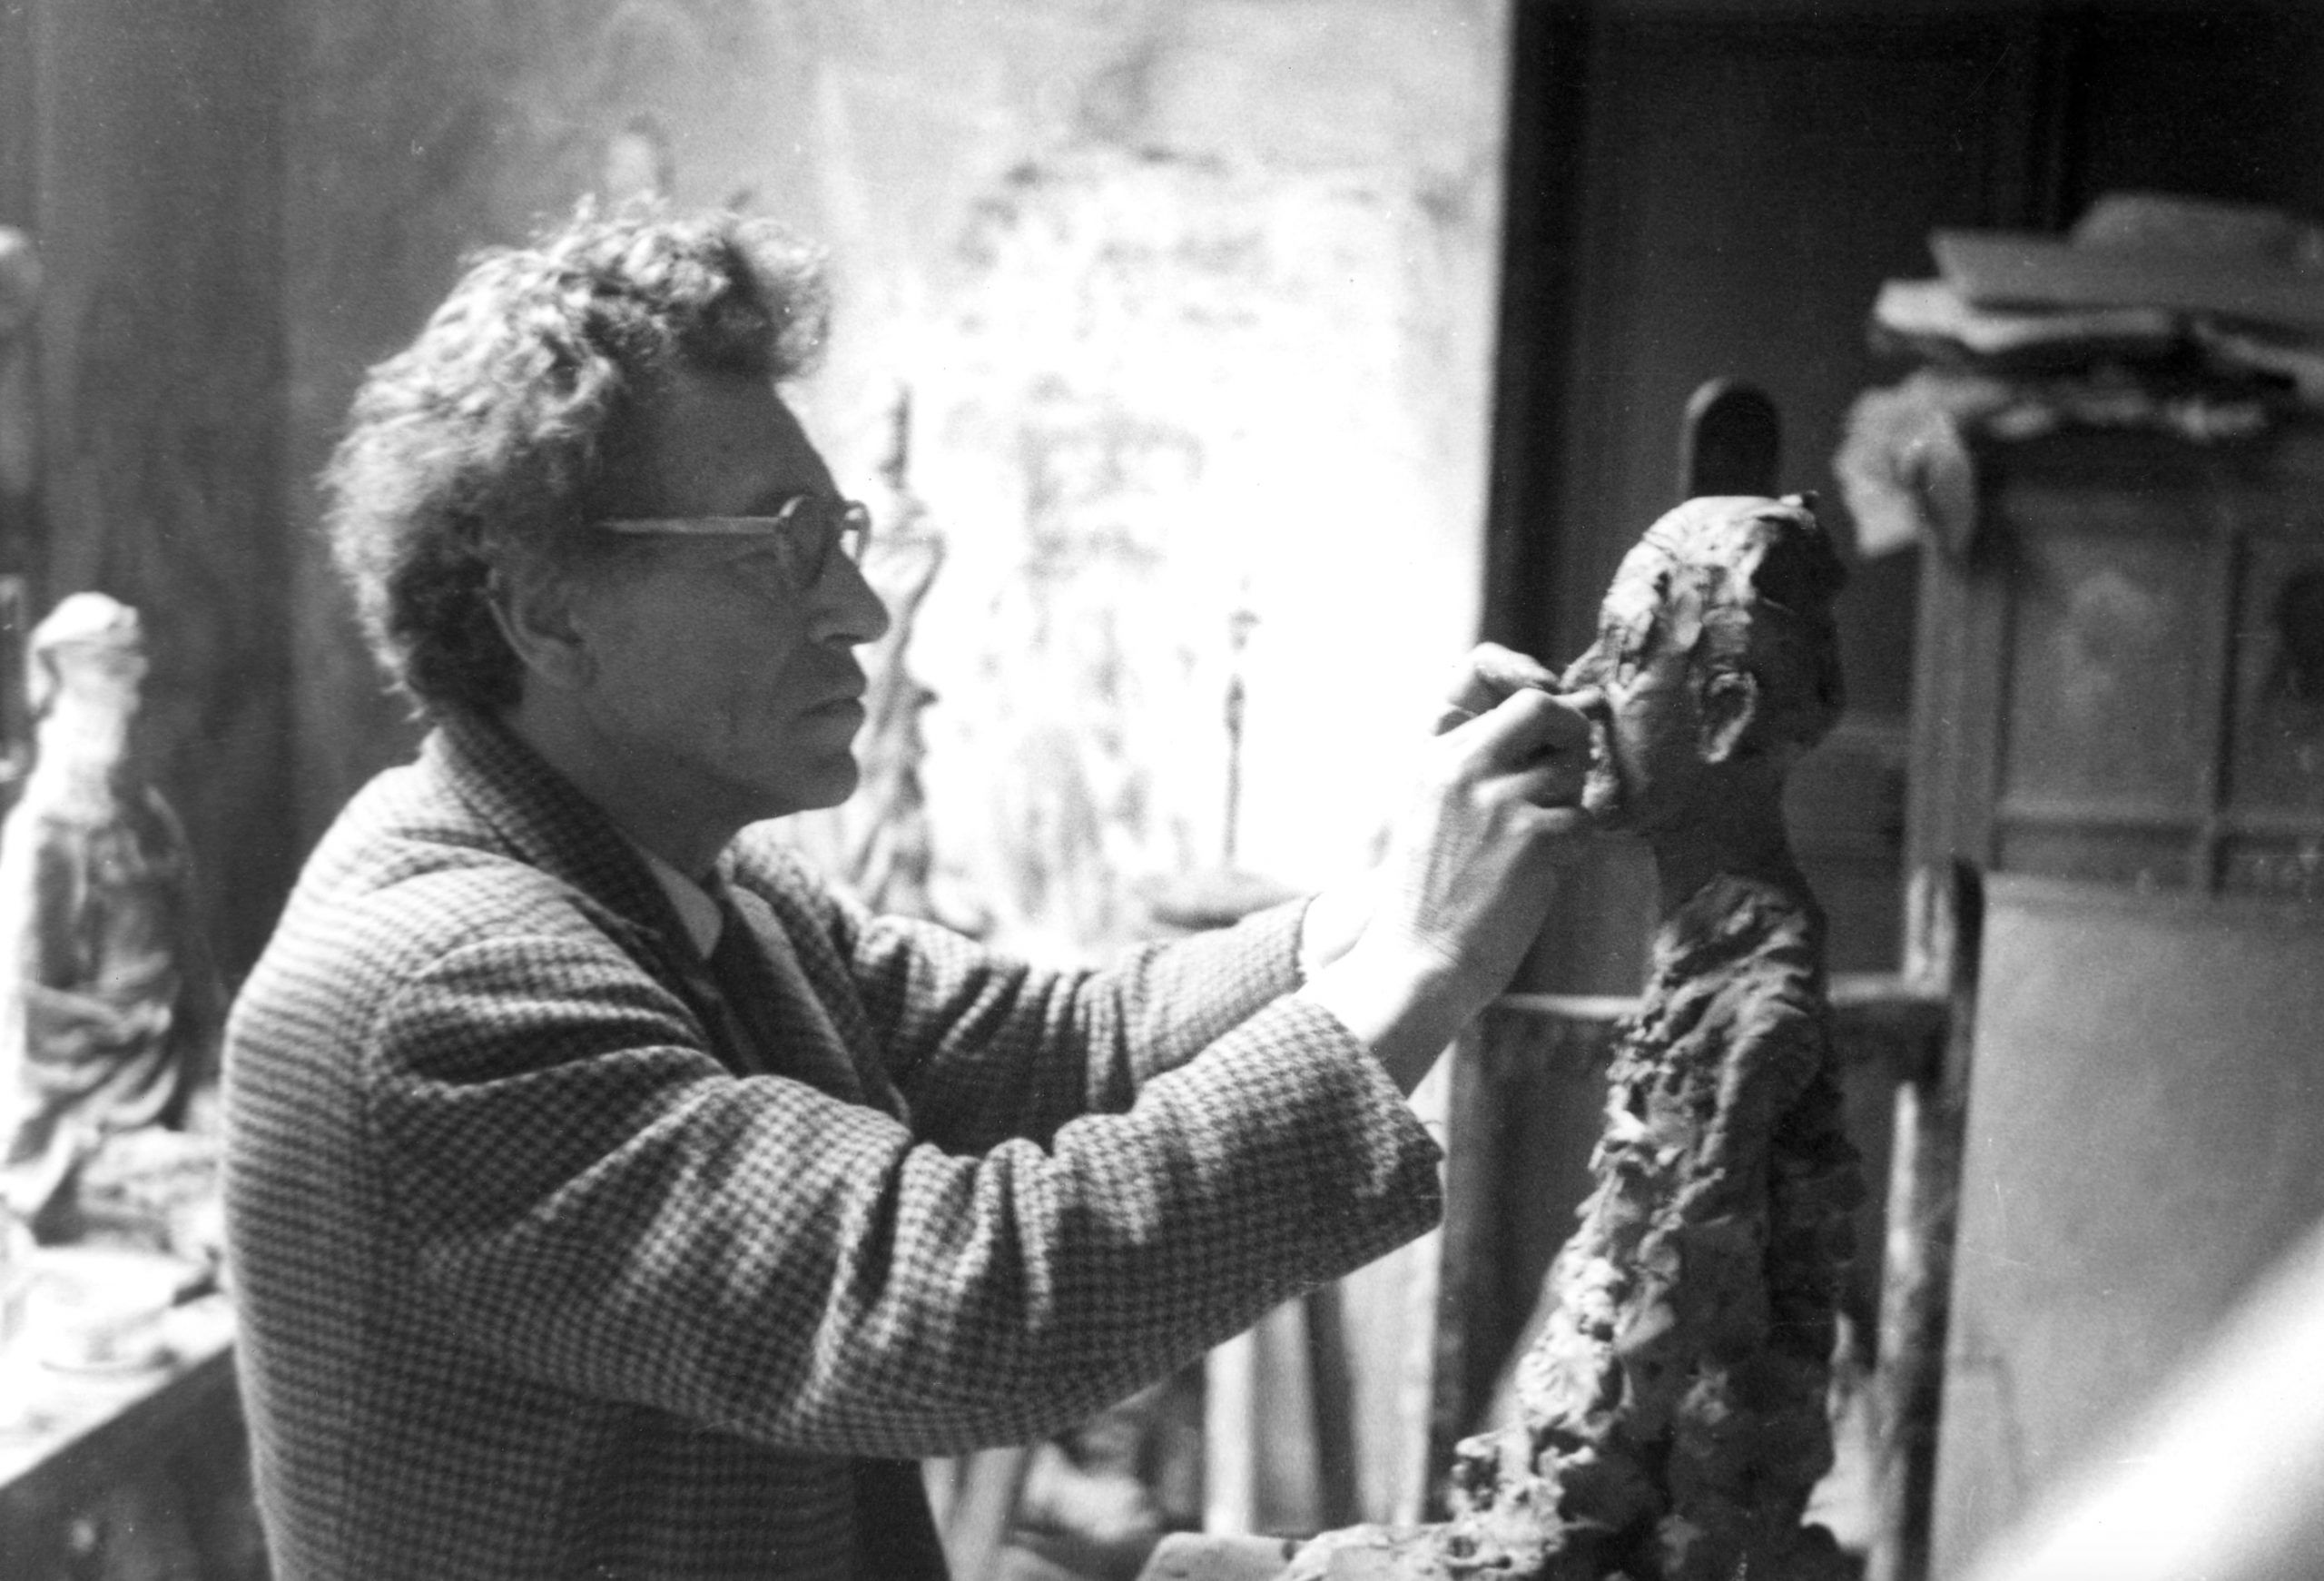 Porto recebe exposição com obras de Alberto Giacometti